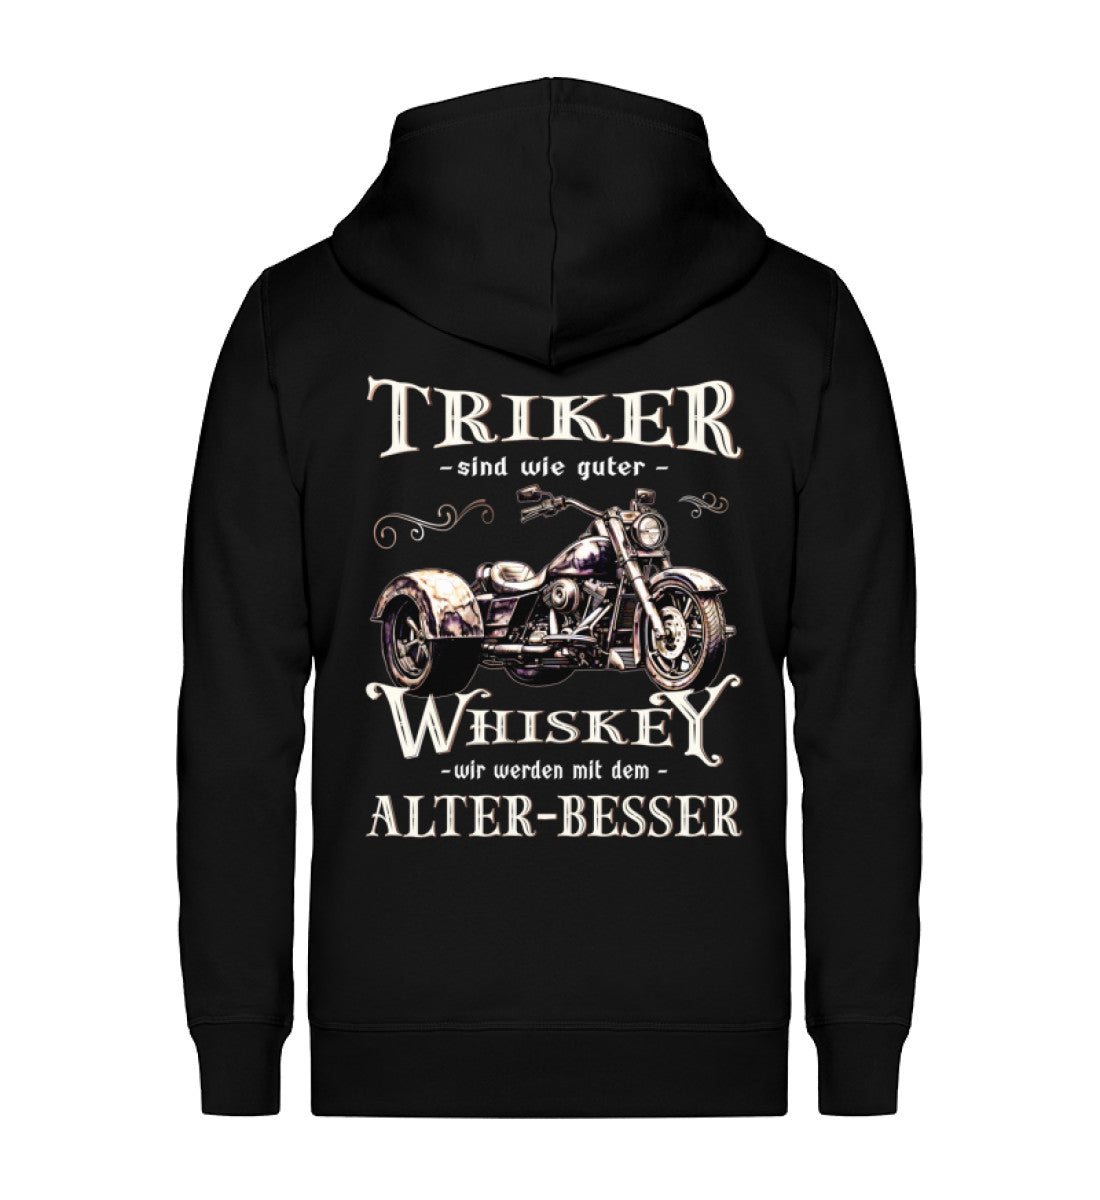 Eine Reißverschluss-Jacke für Trike Fahrer von Wingbikers mit dem Aufdruck, Triker sind wie guter Whiskey - Wir werden mit dem Alter besser, in schwarz.